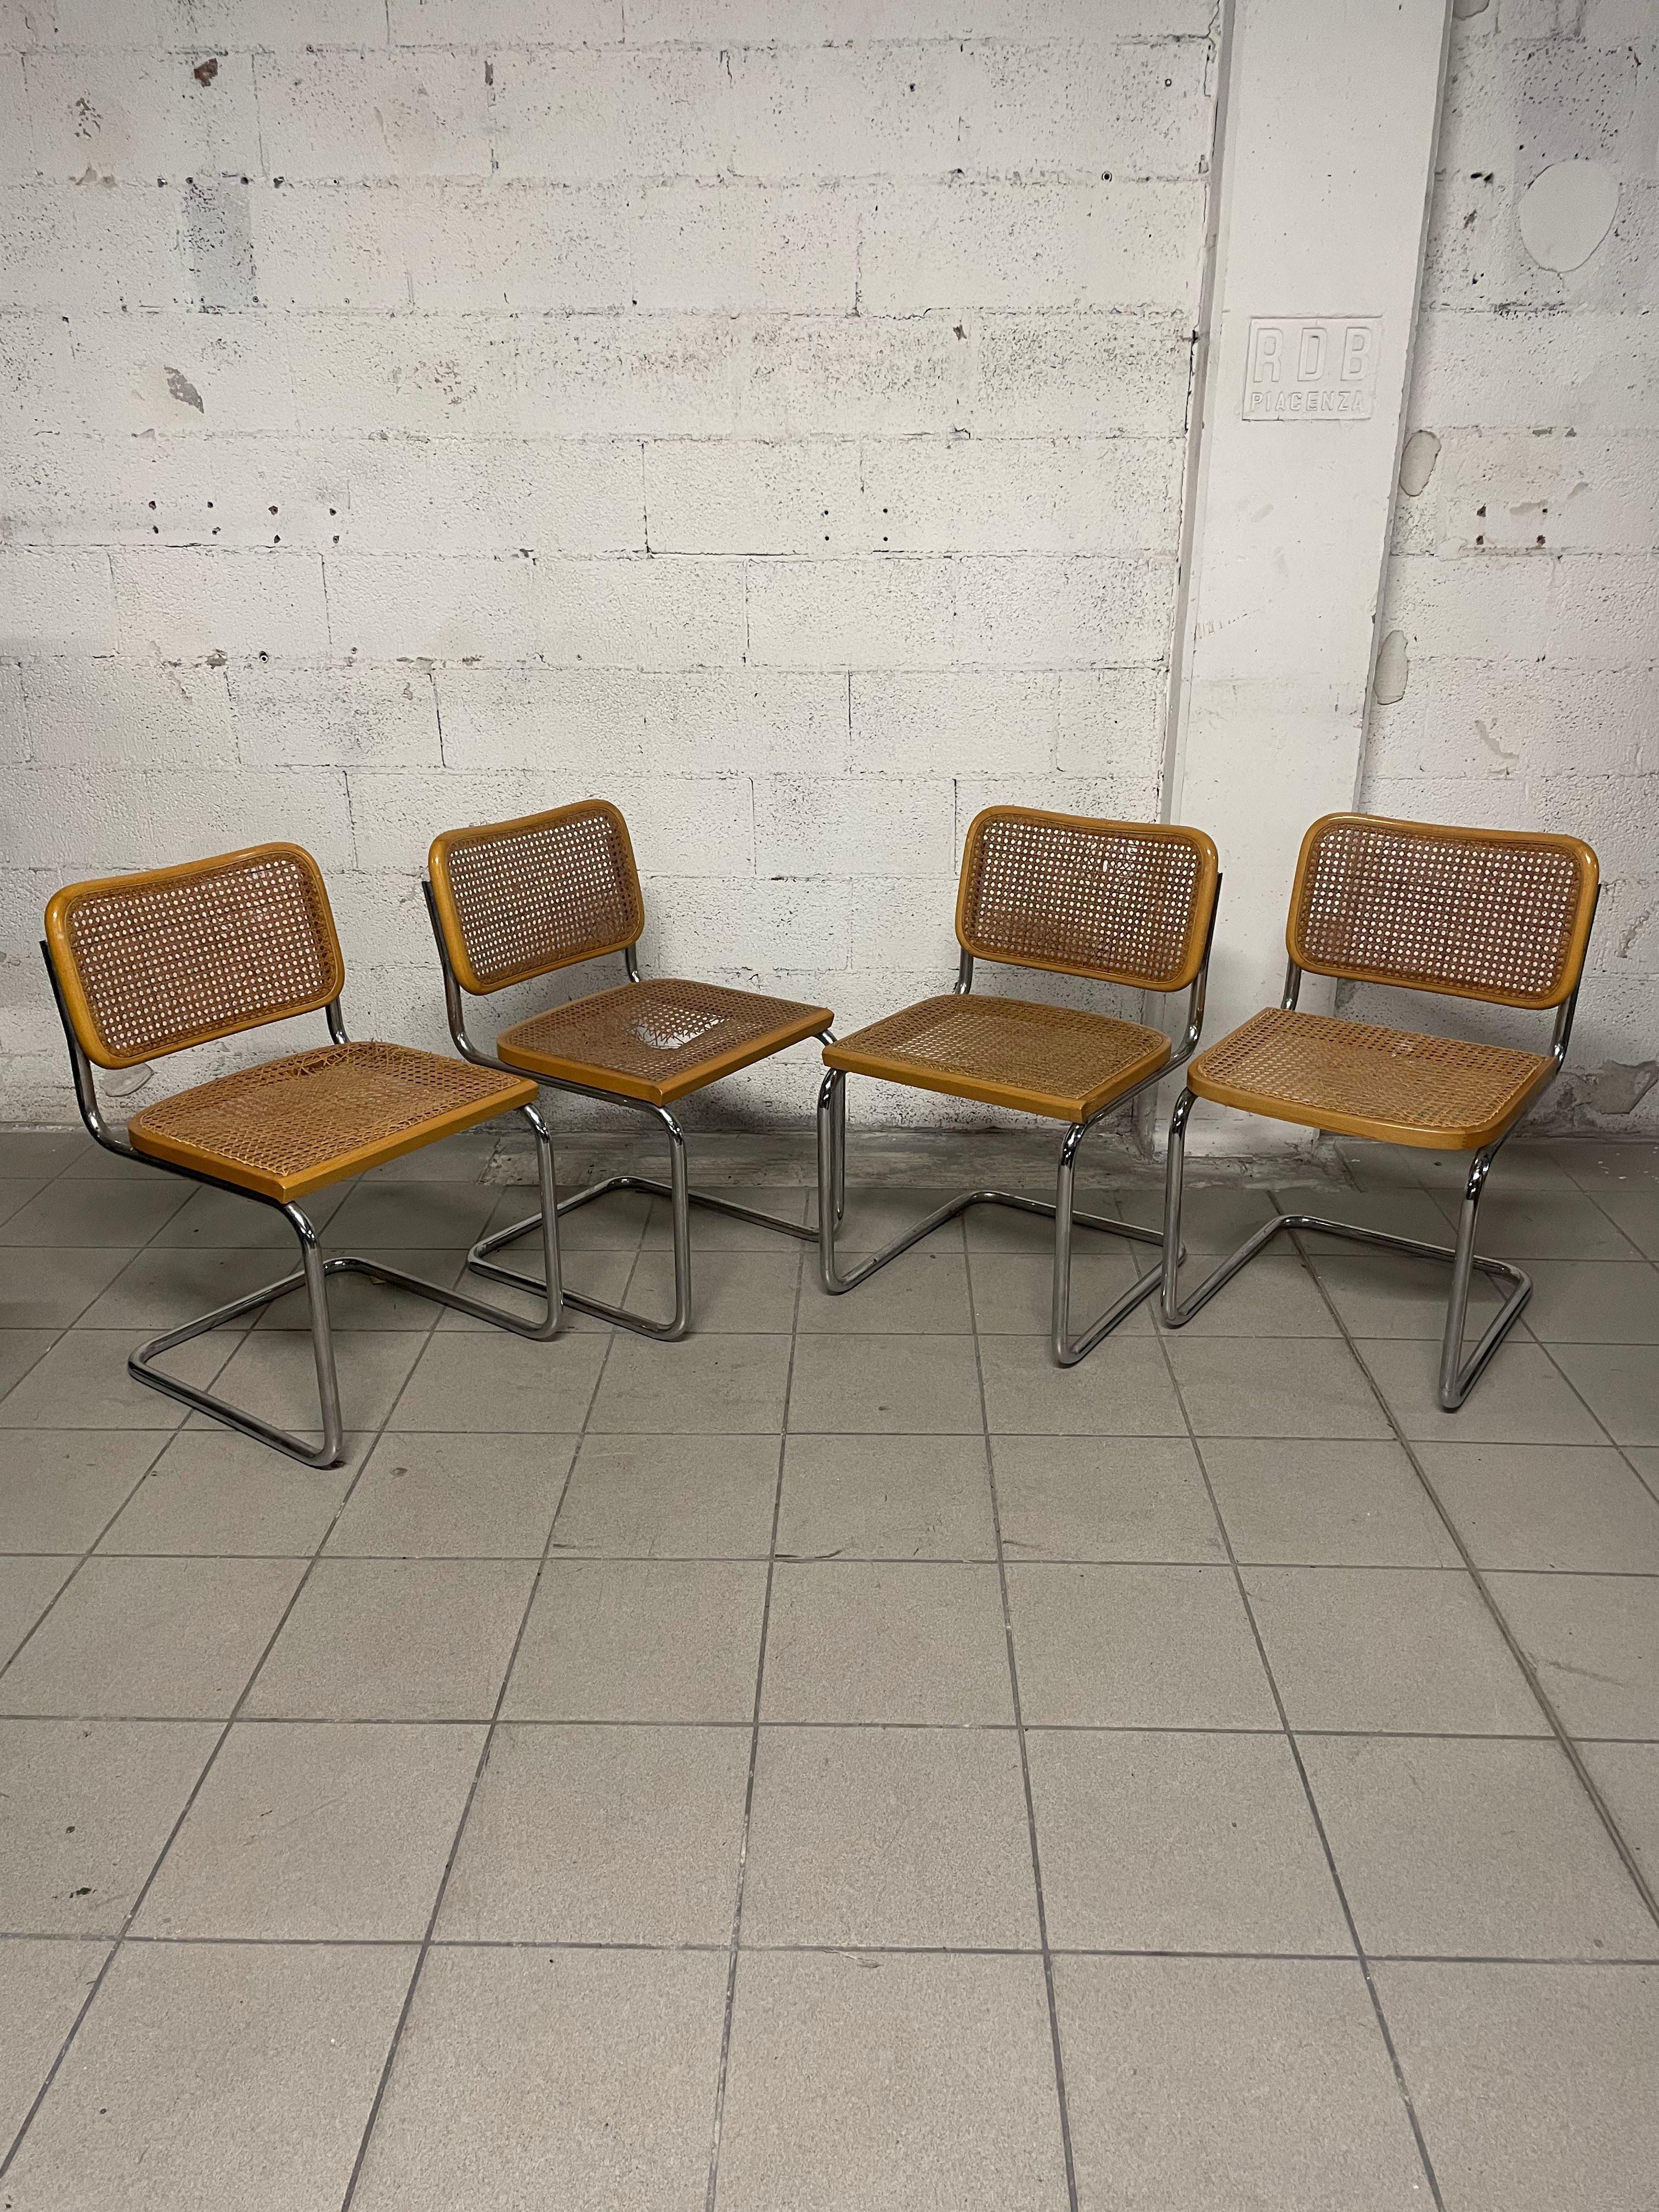 Set di 4 sedie Cesca B32 progettate da Marcel Breuer nel 1928 e qui riprodotte negli anni '70 da Gavina.
Structure en tube d'acacia cromé dans une configuration en 